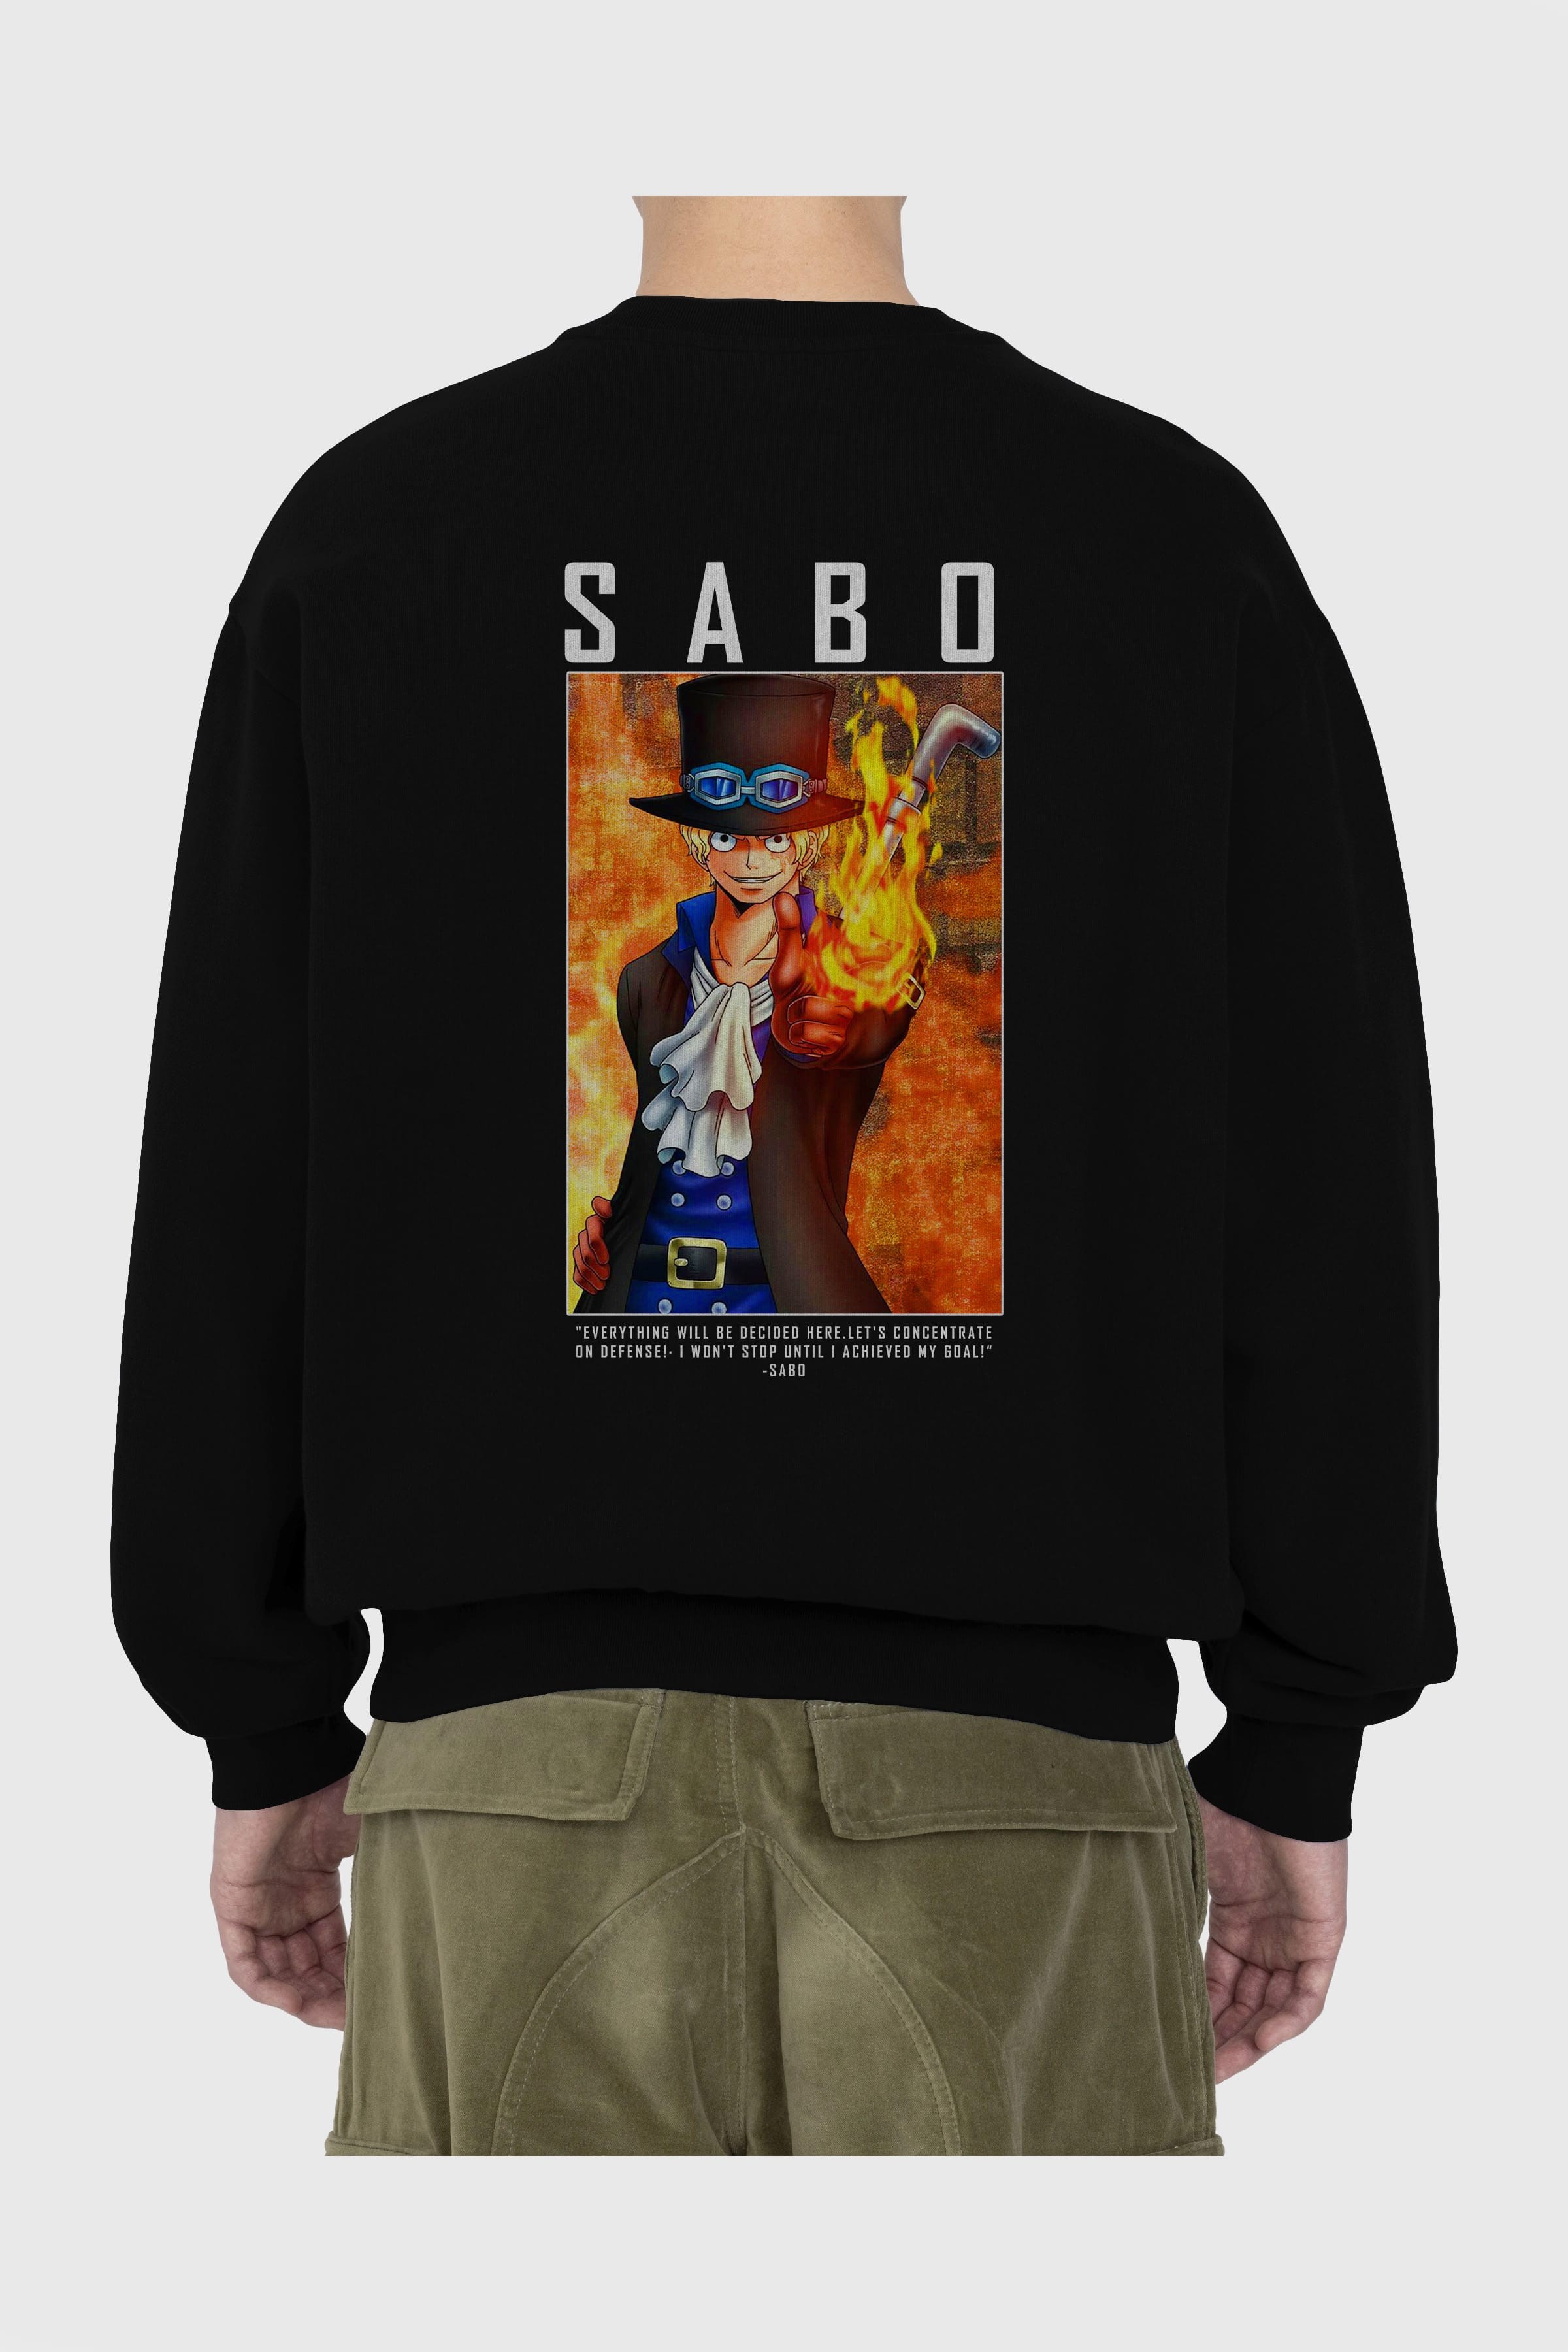 Sabo Arka Baskılı Anime Oversize Sweatshirt Erkek Kadın Unisex